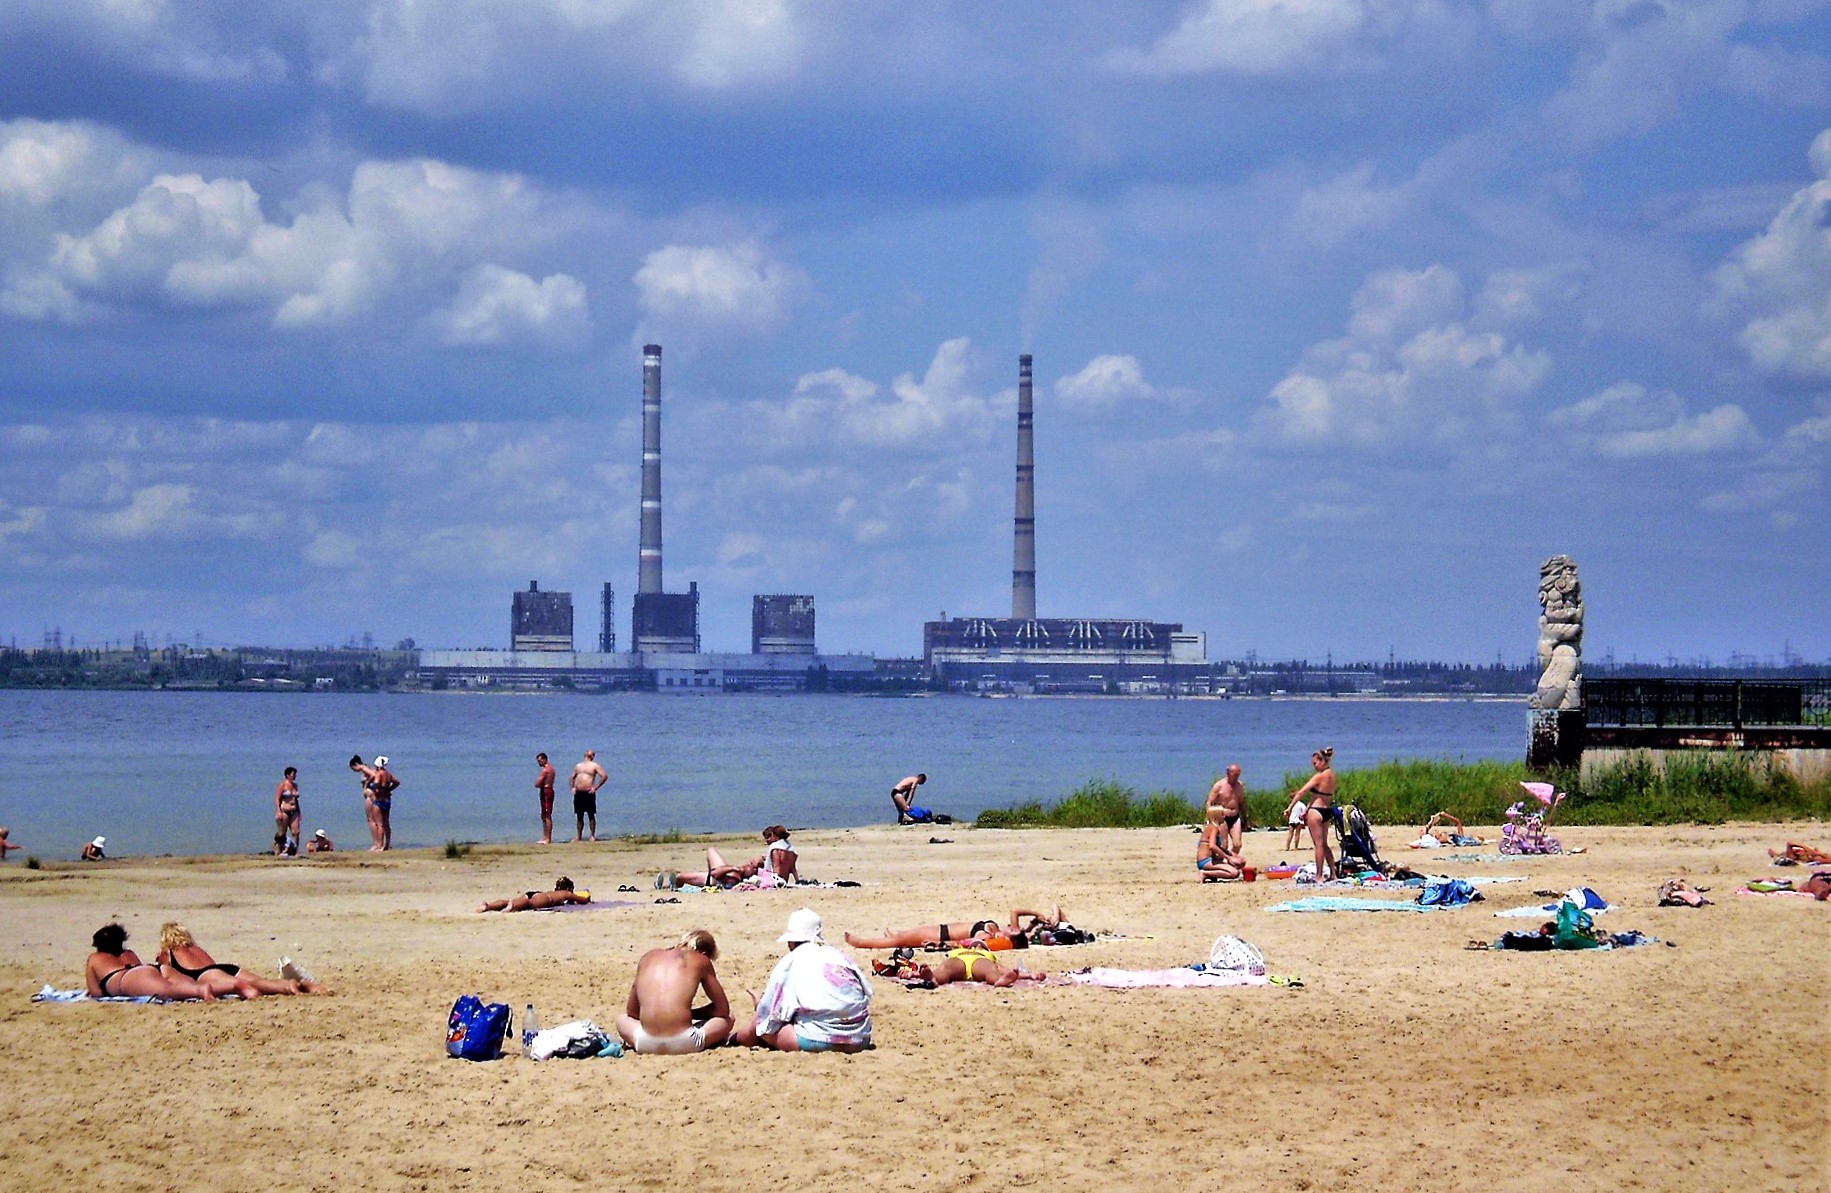 Городской пляж на берегу охладительного пруда Углегорской ТЭС.г. Светлодарск Донецкой области 2010 год. Фото pudar, CC BY-SA 3.0